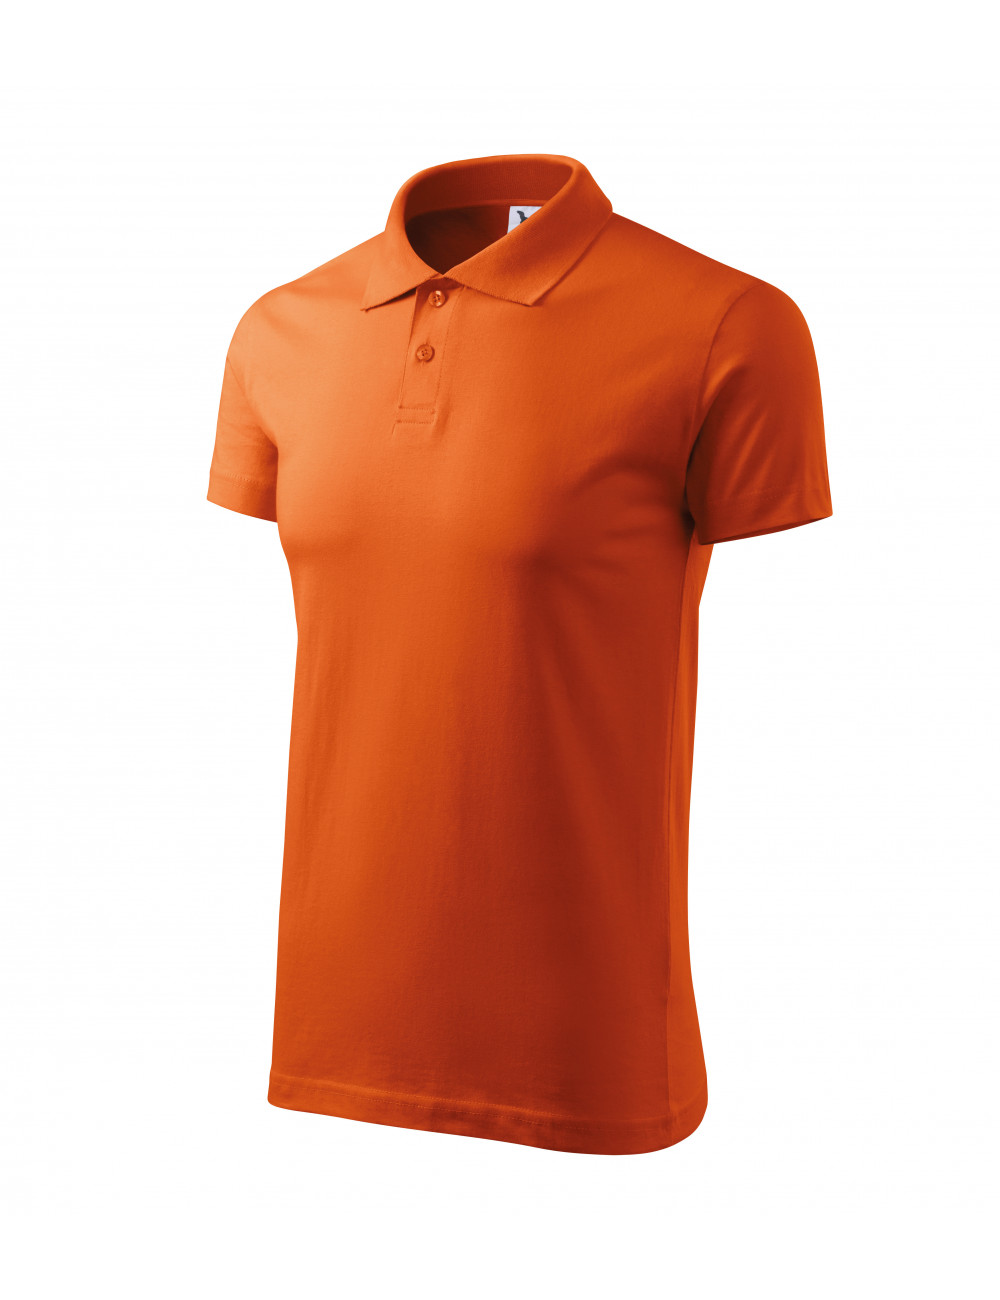 Herren-Einzelpoloshirt, Größe 202, orange Adler Malfini